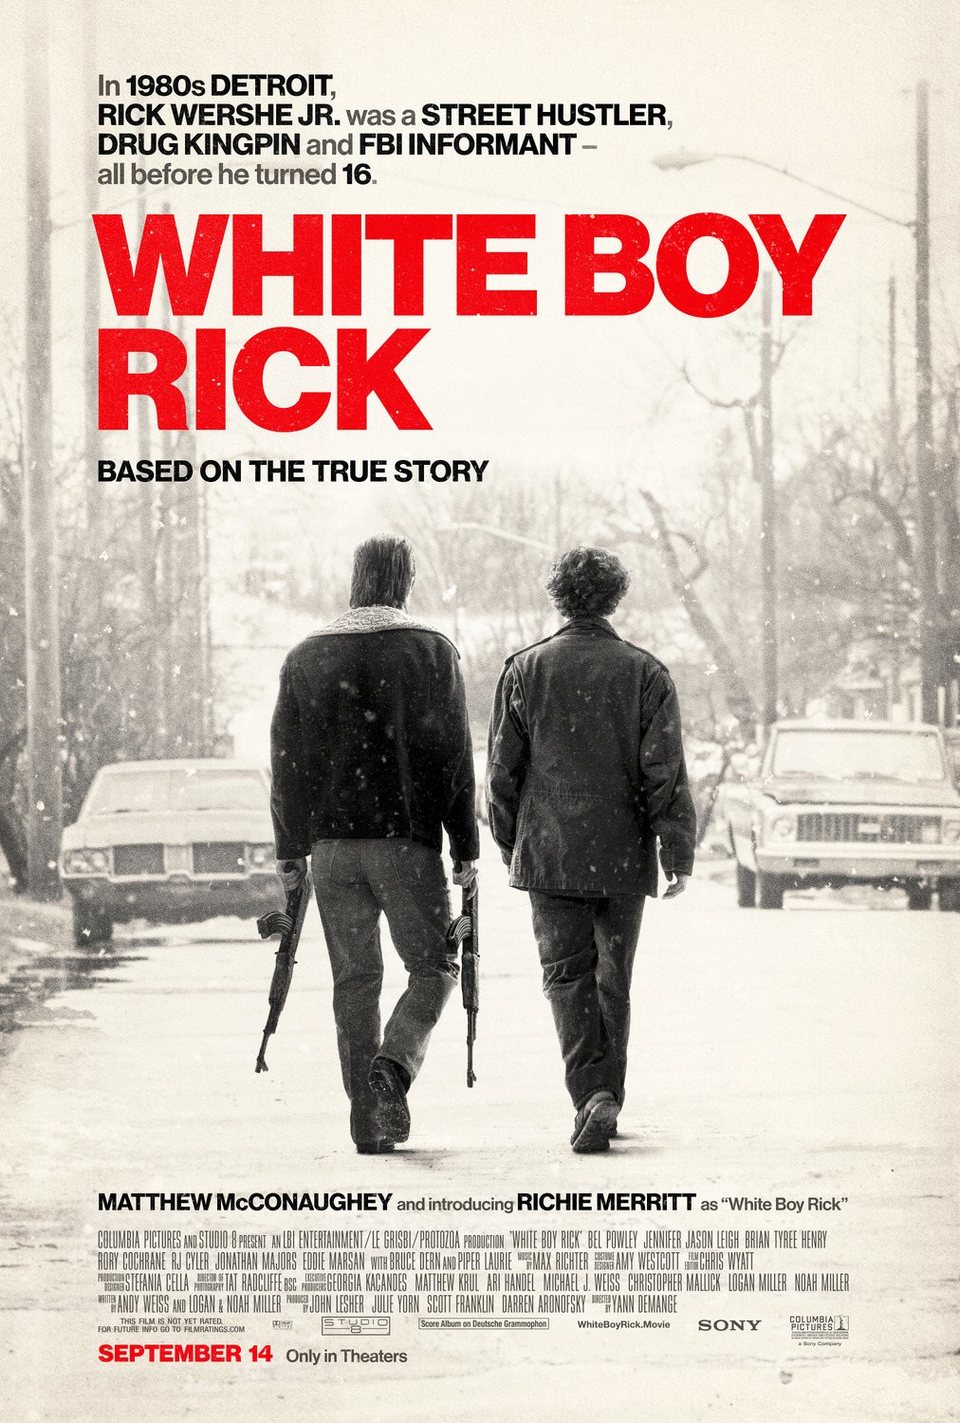 Poster #2 poster for White Boy Rick